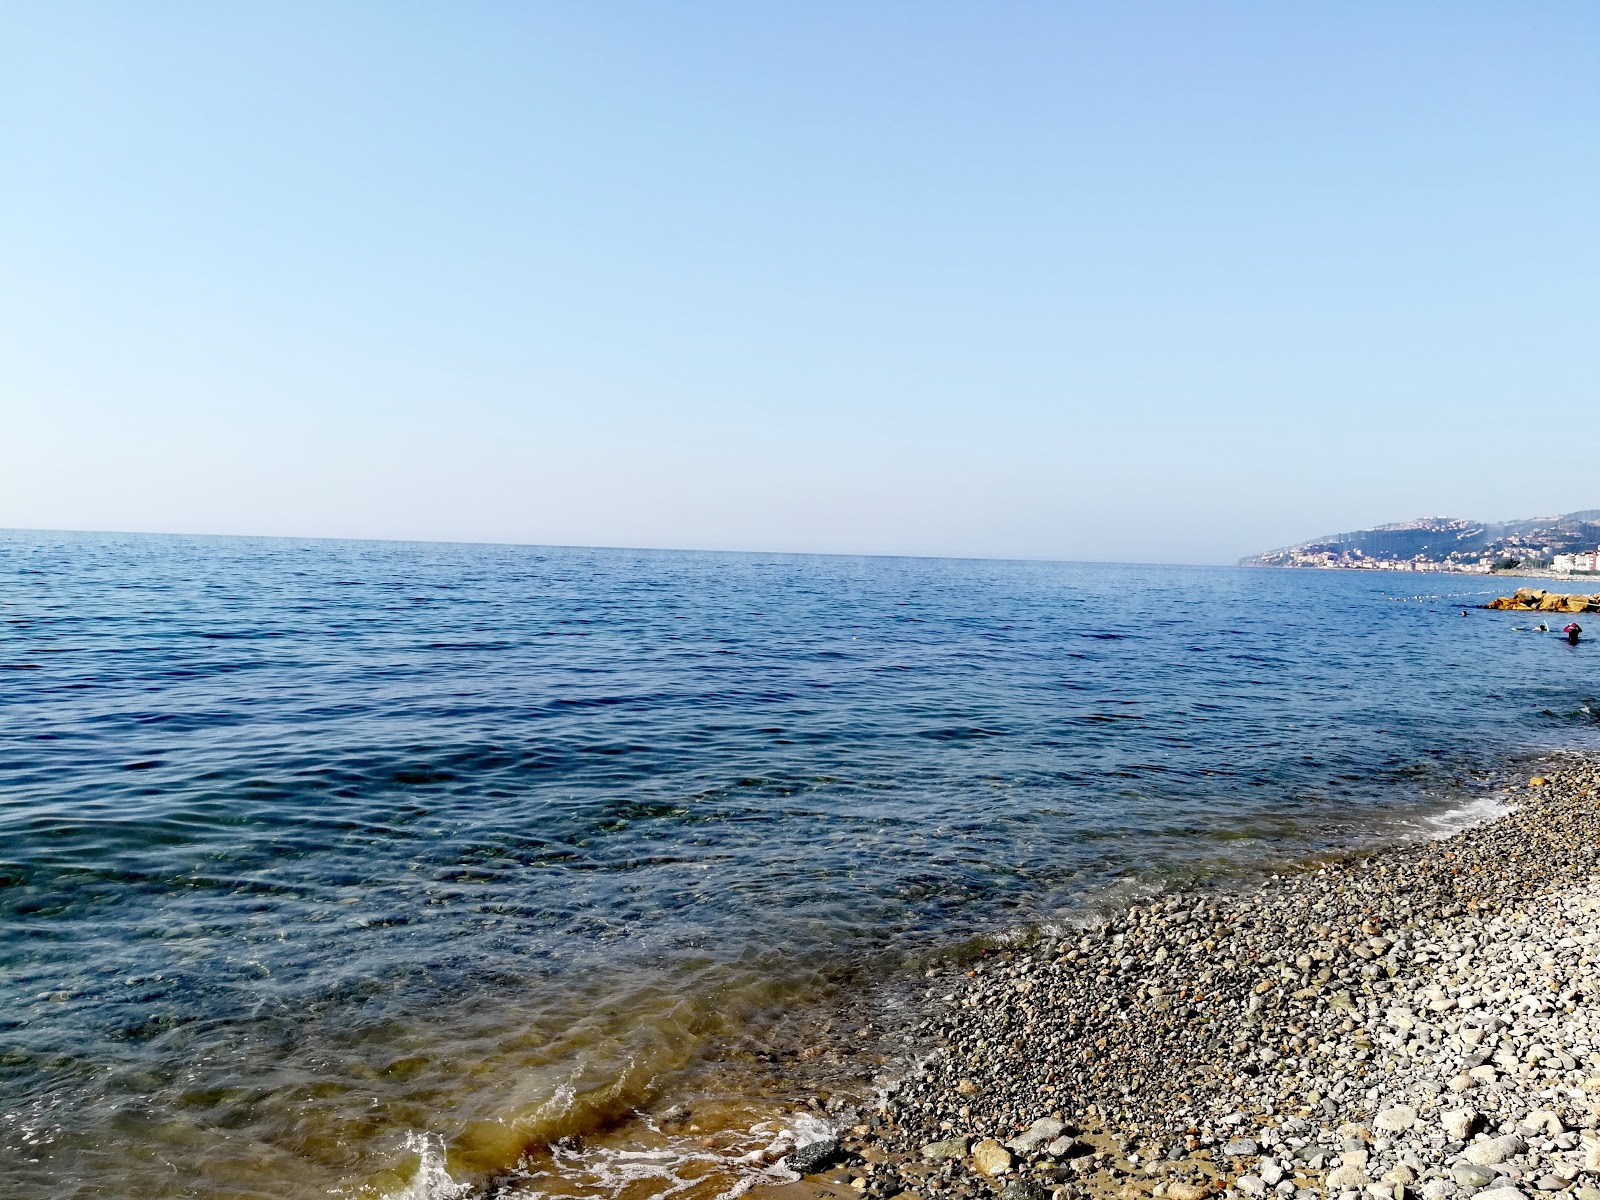 Foto af Deniz Yildizi beach - populært sted blandt afslapningskendere